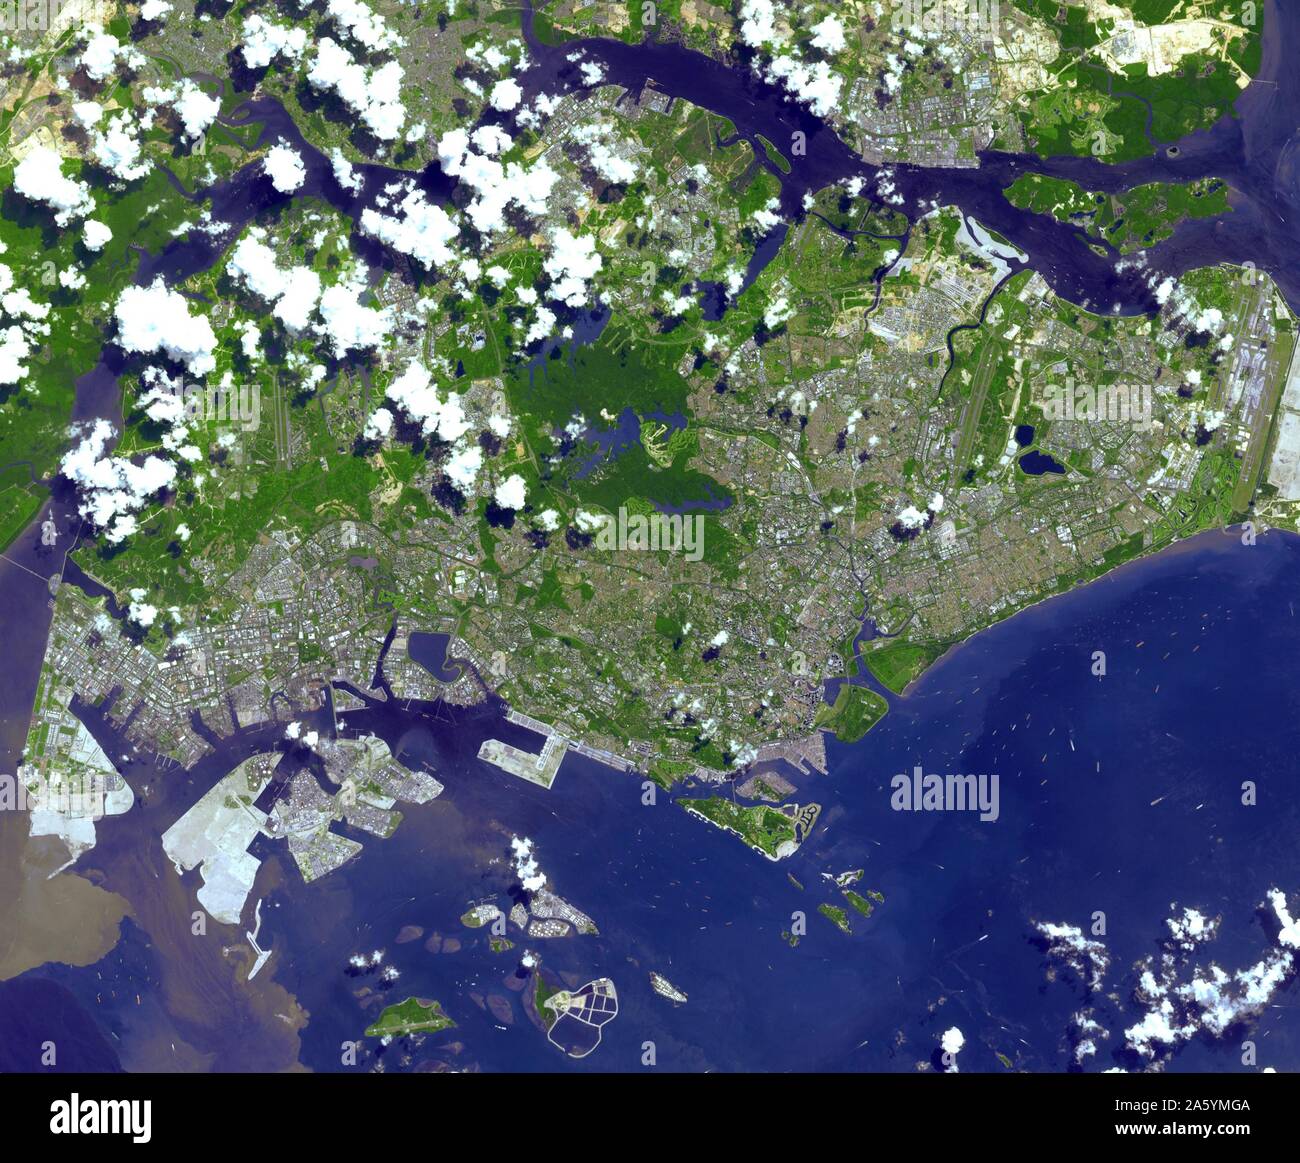 La République de Singapour est une ville-état au large de la pointe sud de la Péninsule Malaysienne. Un pays insulaire composé de 63 îles. 22 juin 2001. Banque D'Images